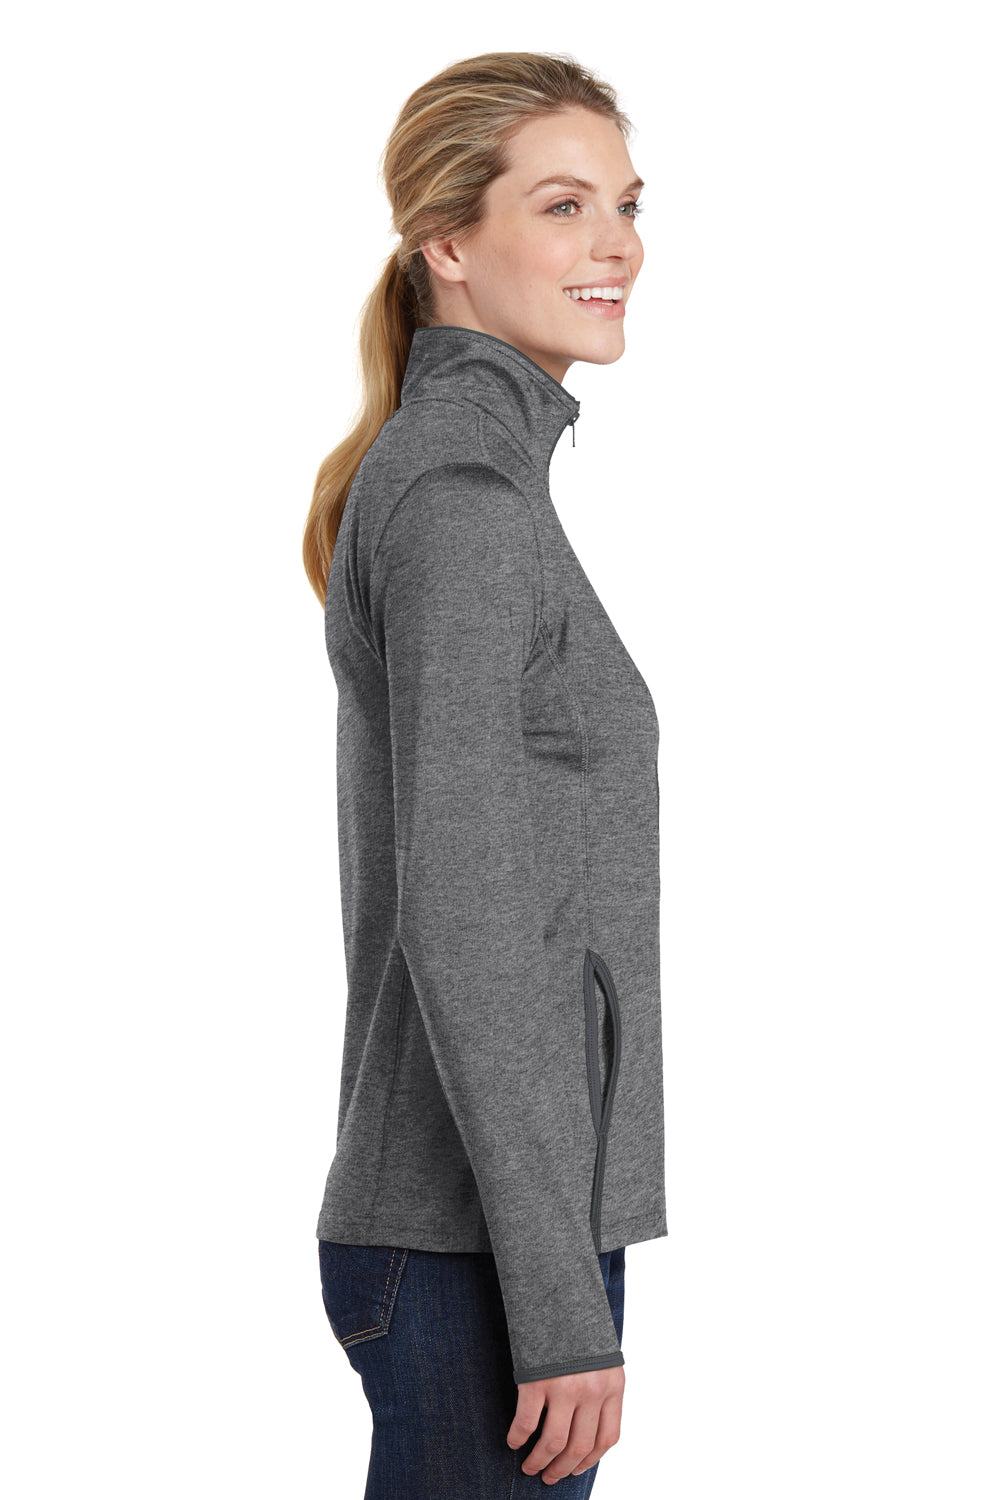 Sport-Tek LST853 Womens Sport-Wick Moisture Wicking Full Zip Jacket Heather Grey/Charcoal Grey Side